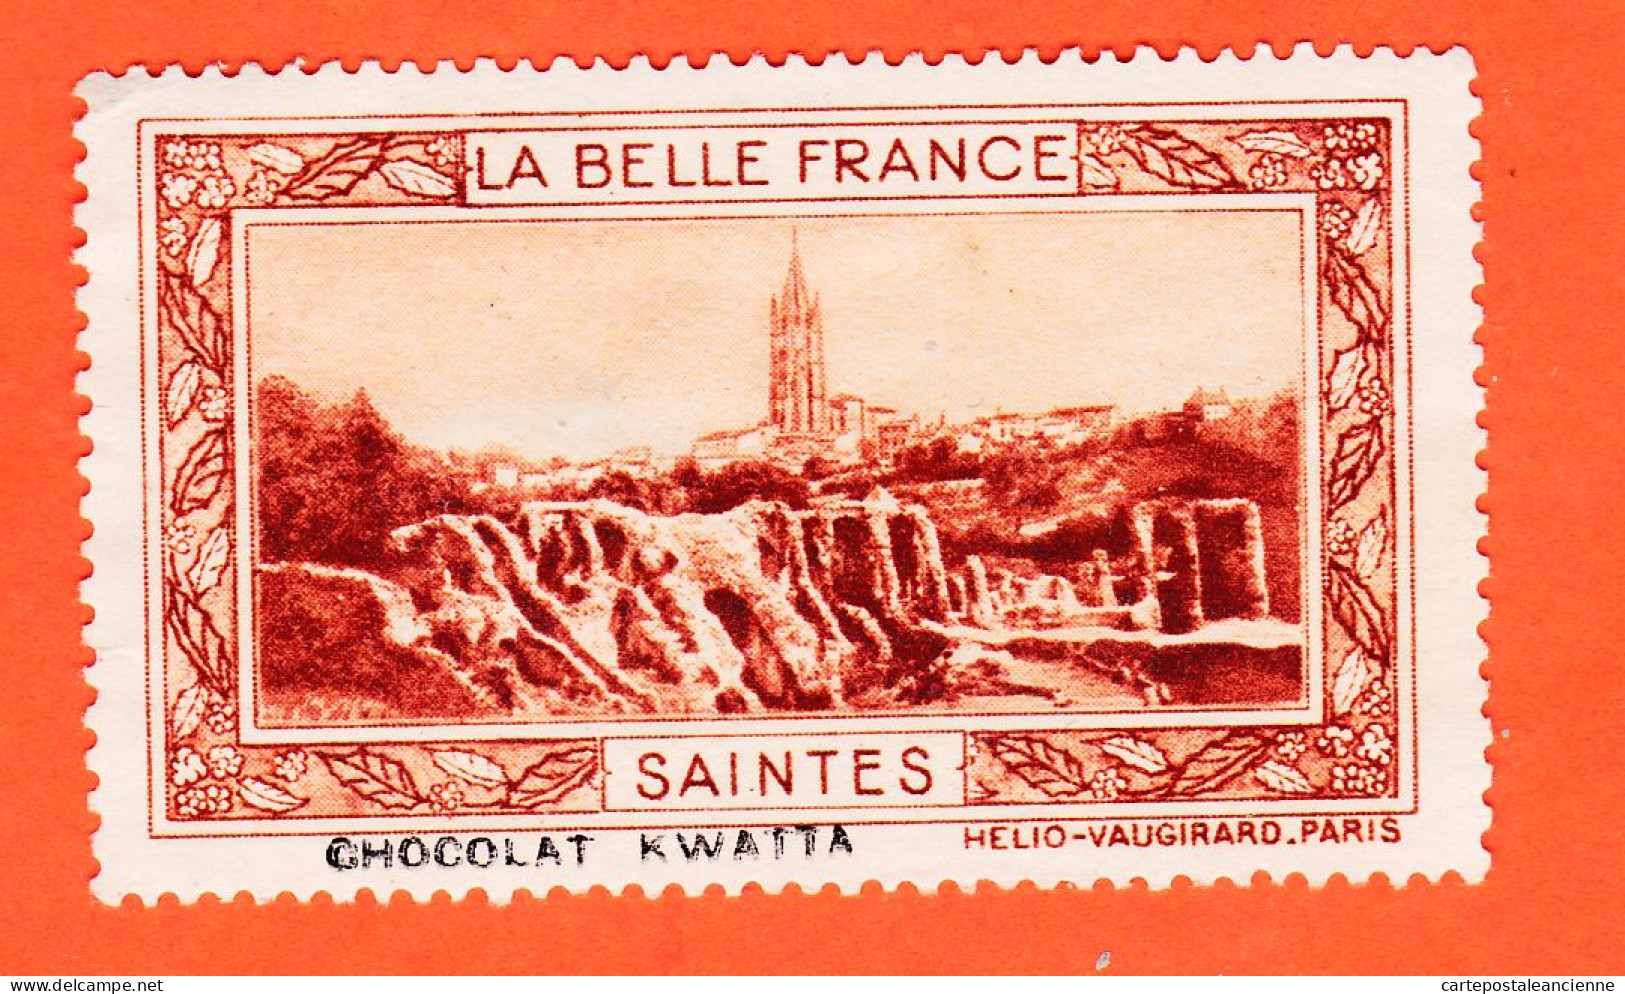 05223 ● SAINTES 16-Charente Pub Chocolat KWATTA Vignette Collection BELLE FRANCE HELIO-VAUGIRARD Erinnophilie - Tourisme (Vignettes)